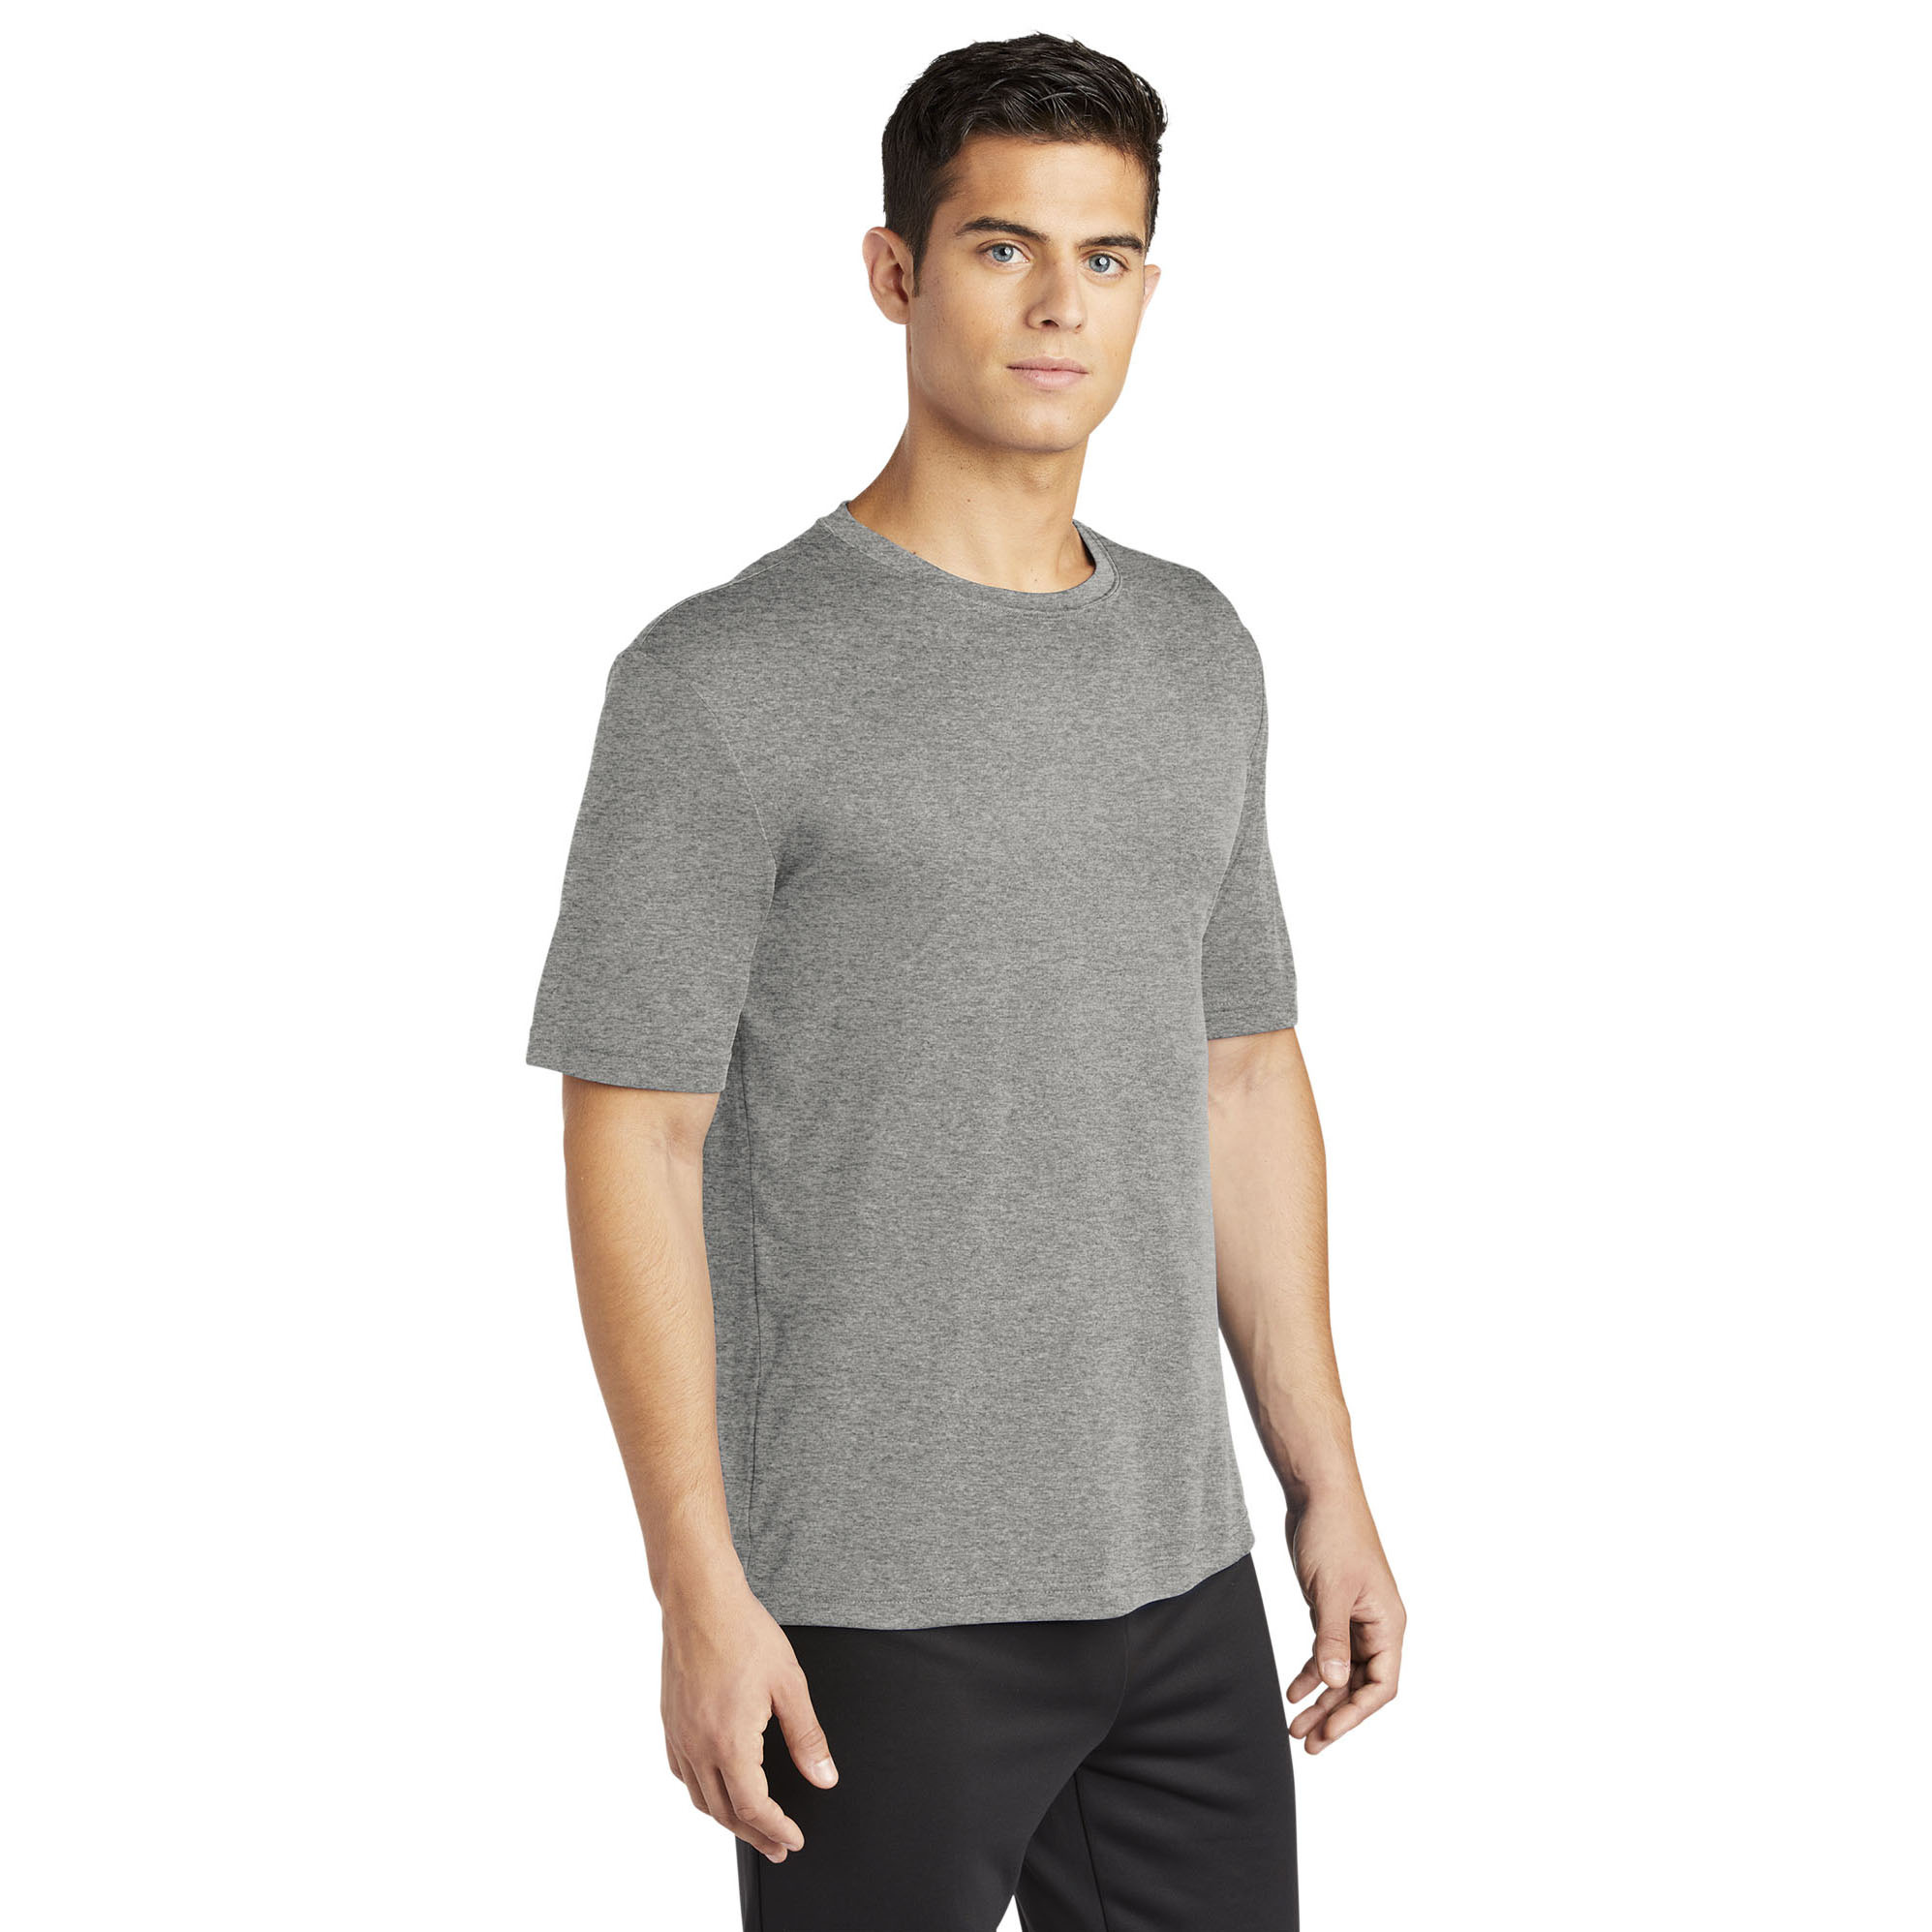 Elliptical SS Tee Shirt - Grey Heather (Size XL), Men's